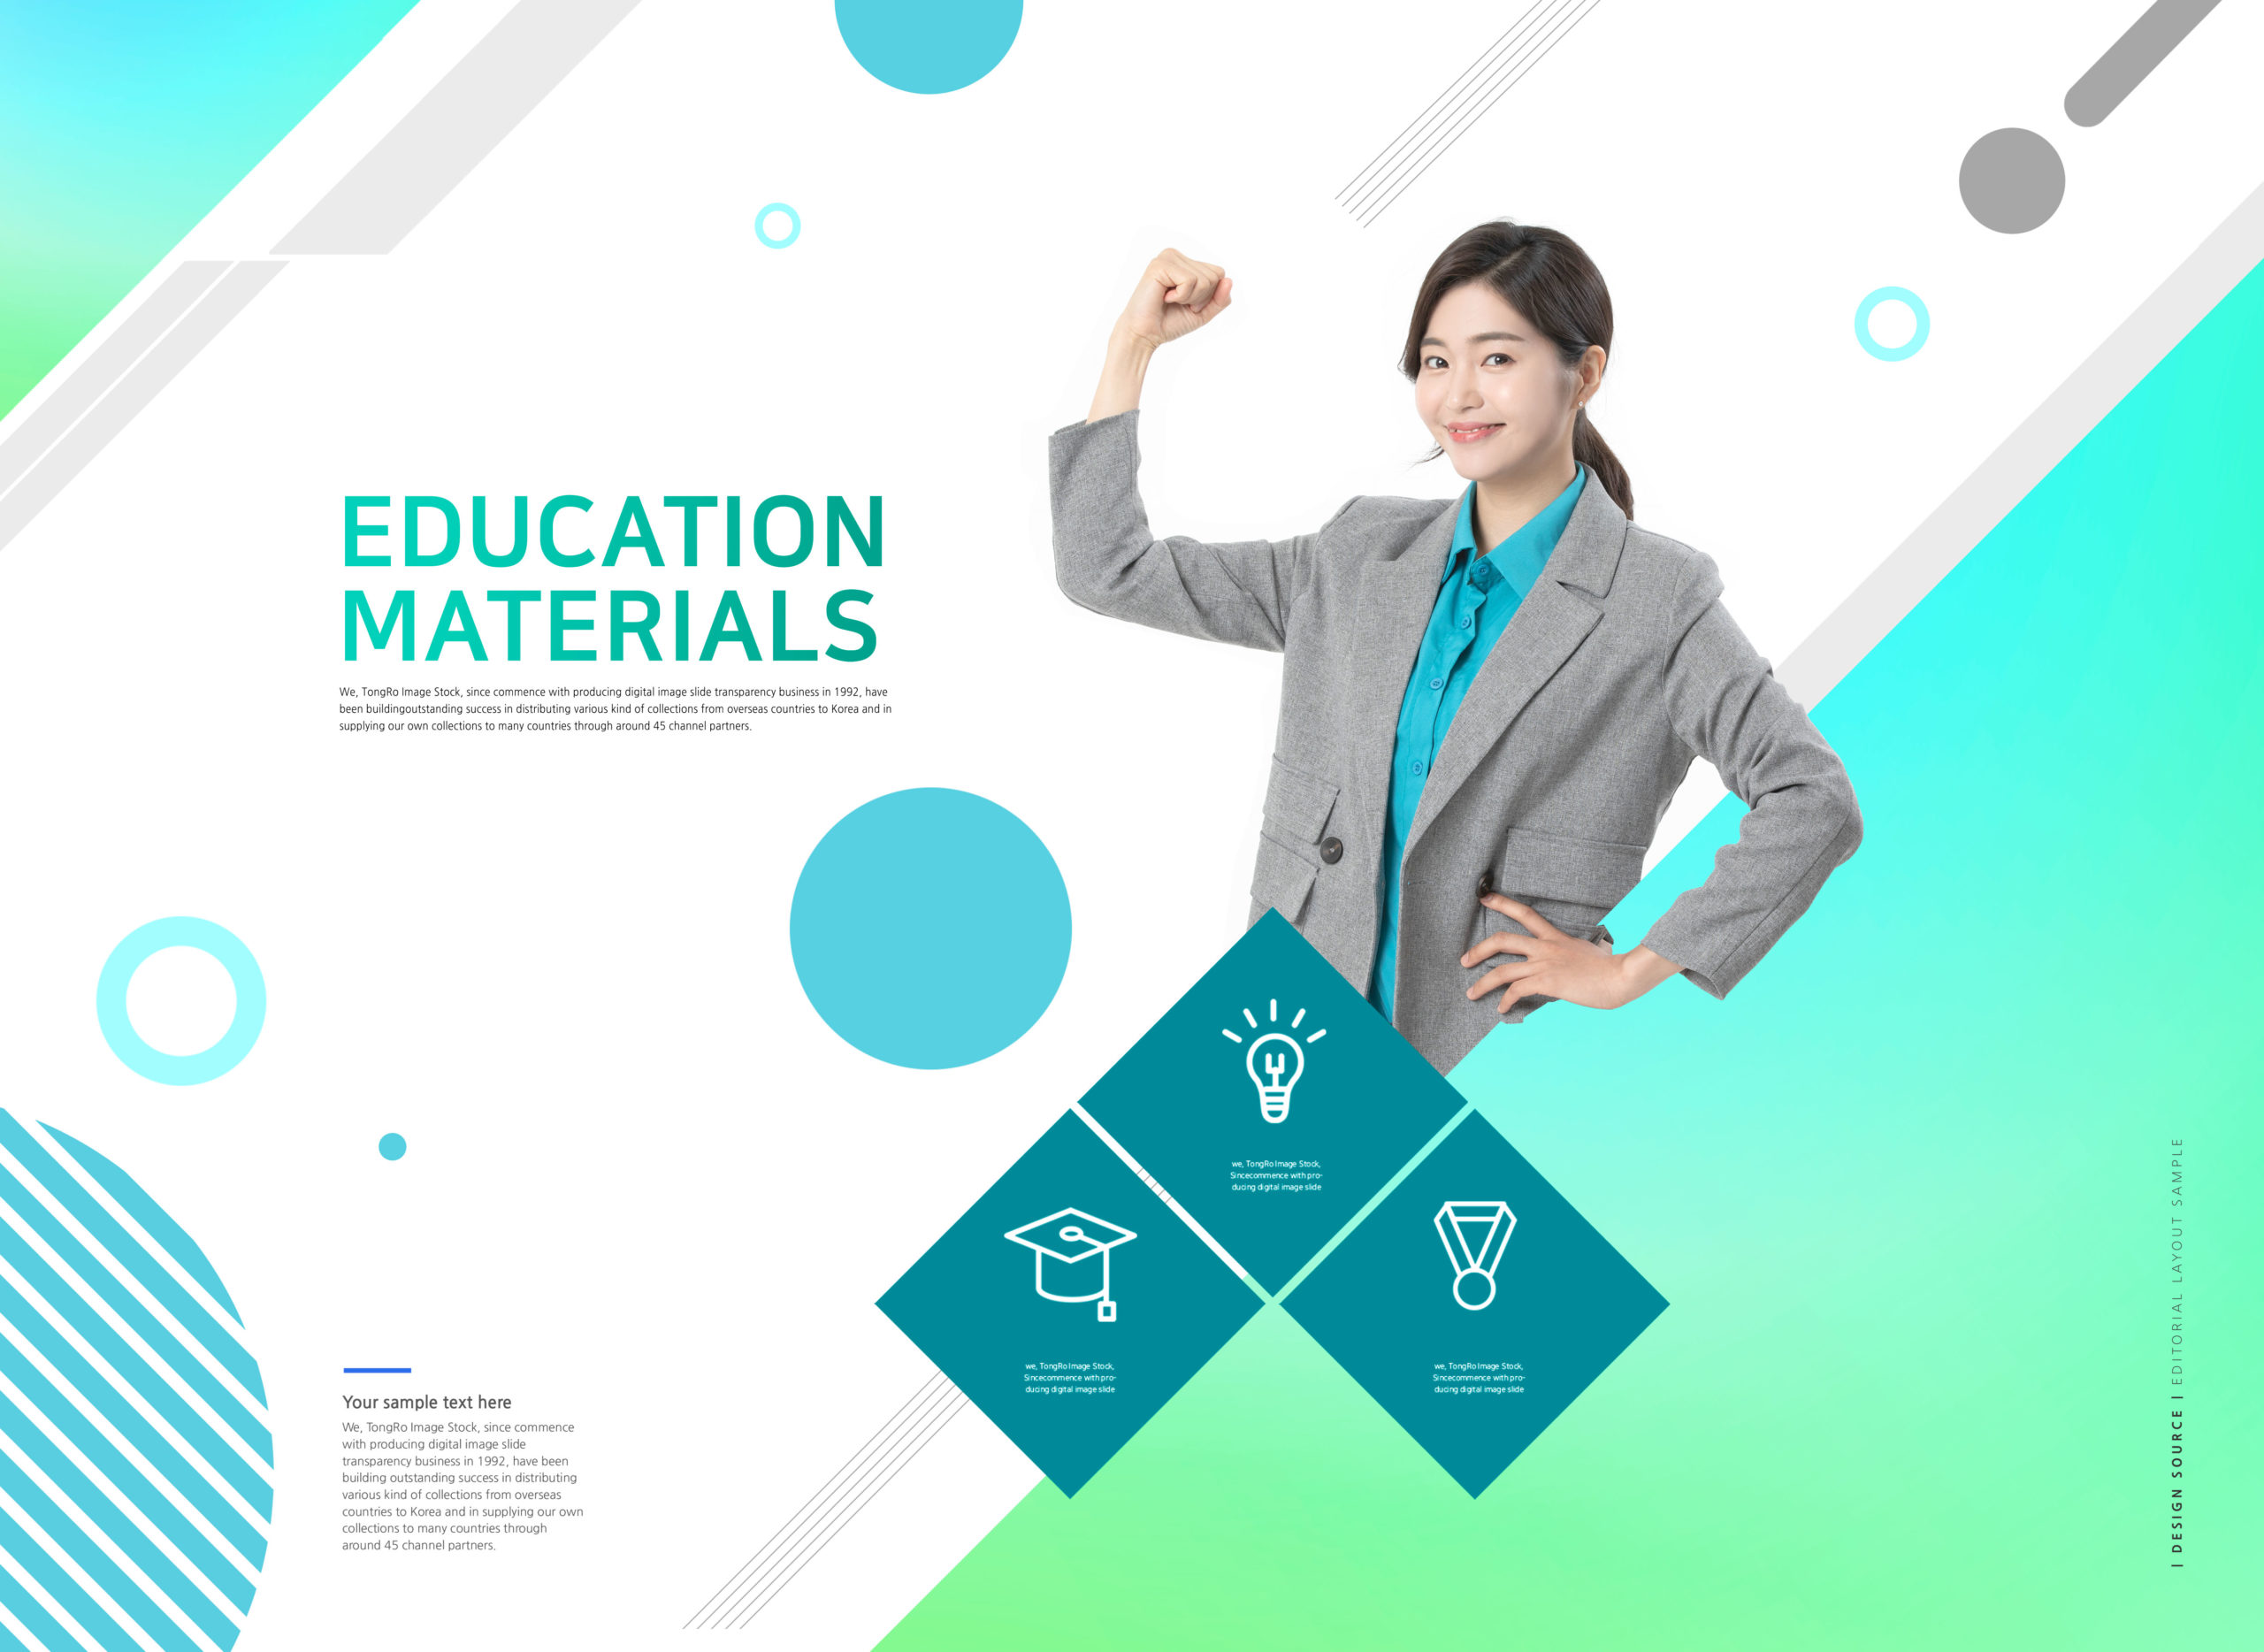 教育材料教育学习网站主页设计psd模板套装插图(4)